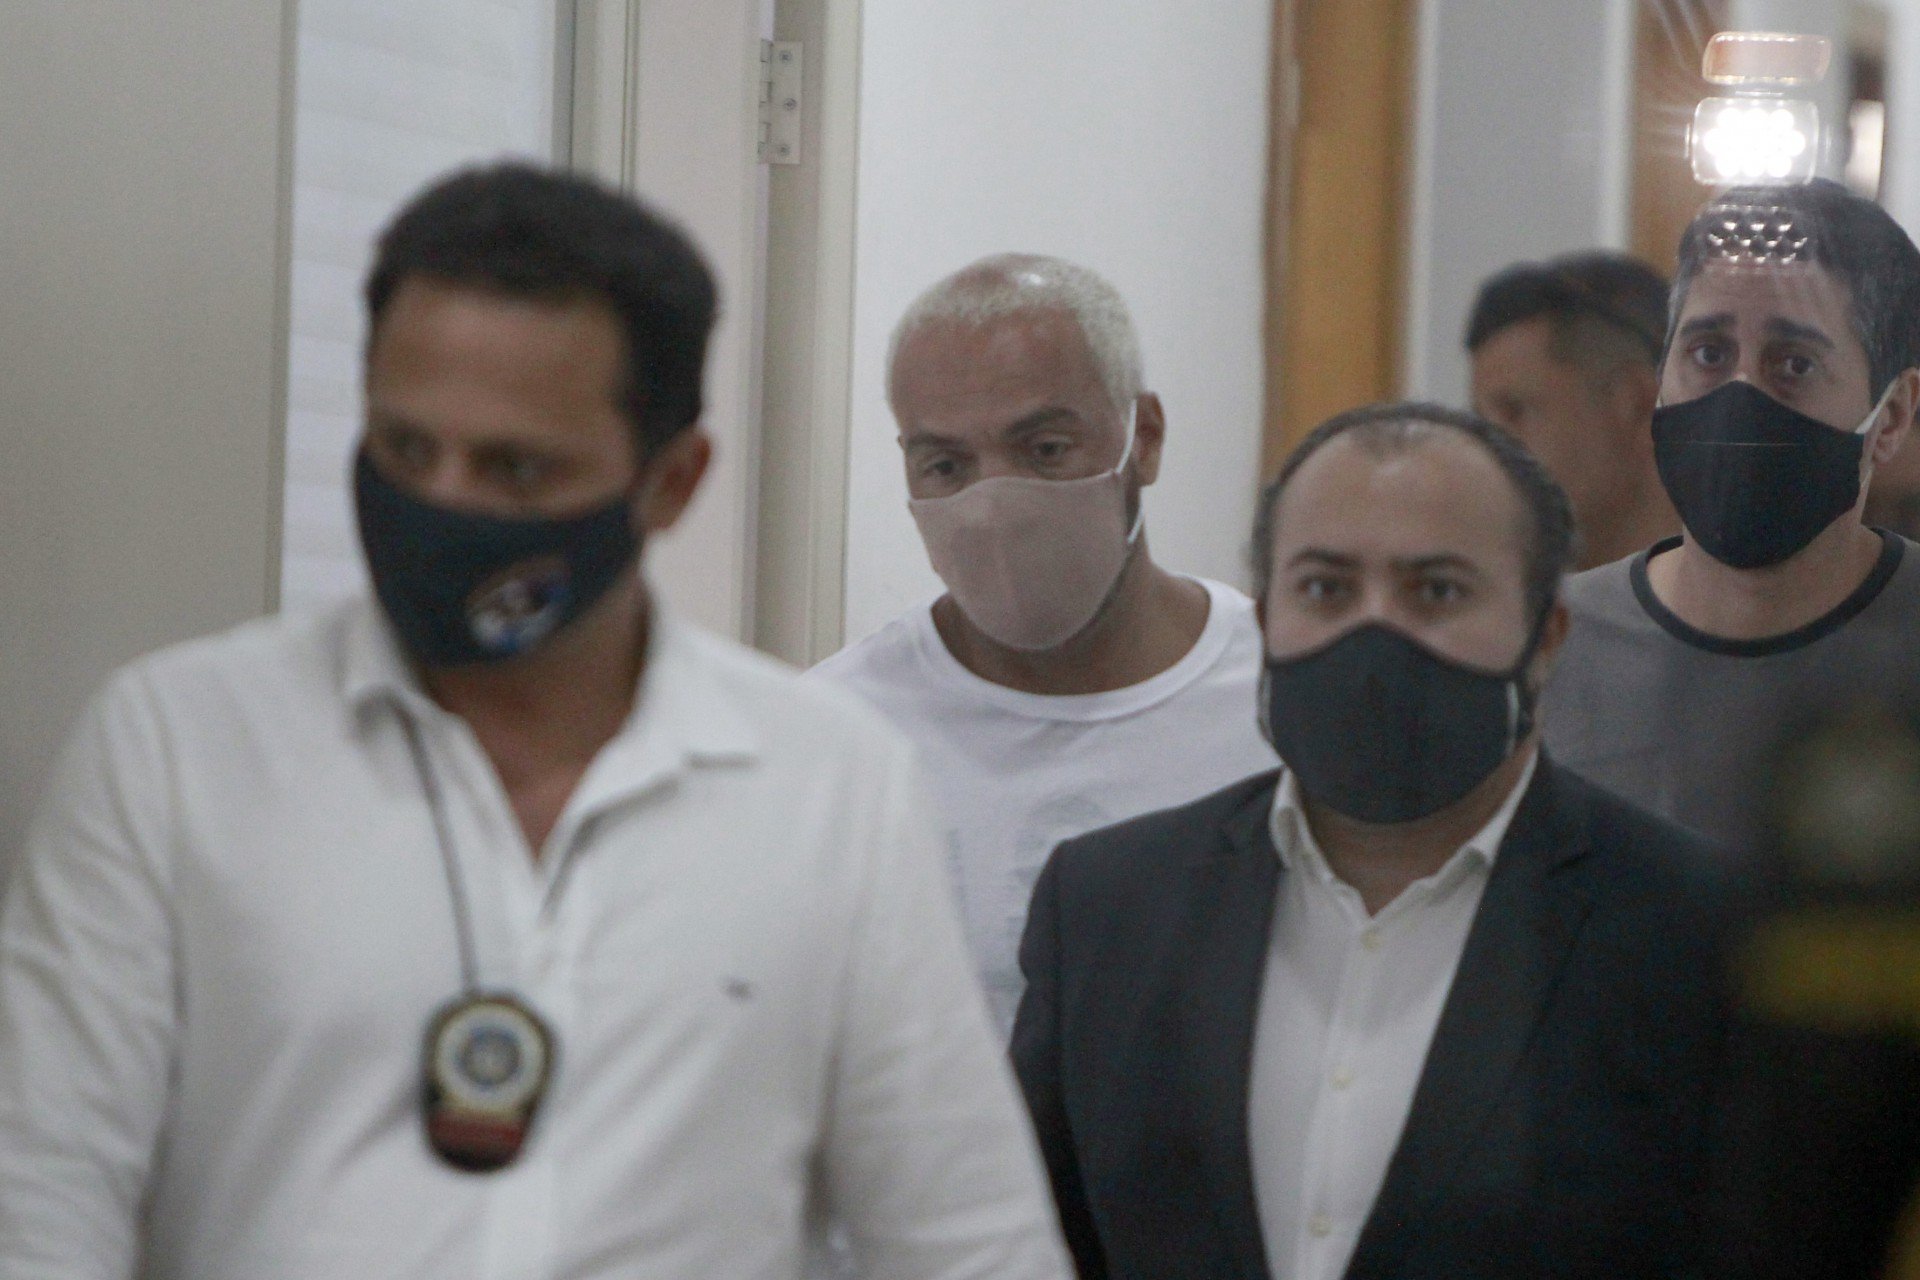 Cantor Belo foi preso nesta quarta-feira (17) - Luciano Belford/Agência O Dia